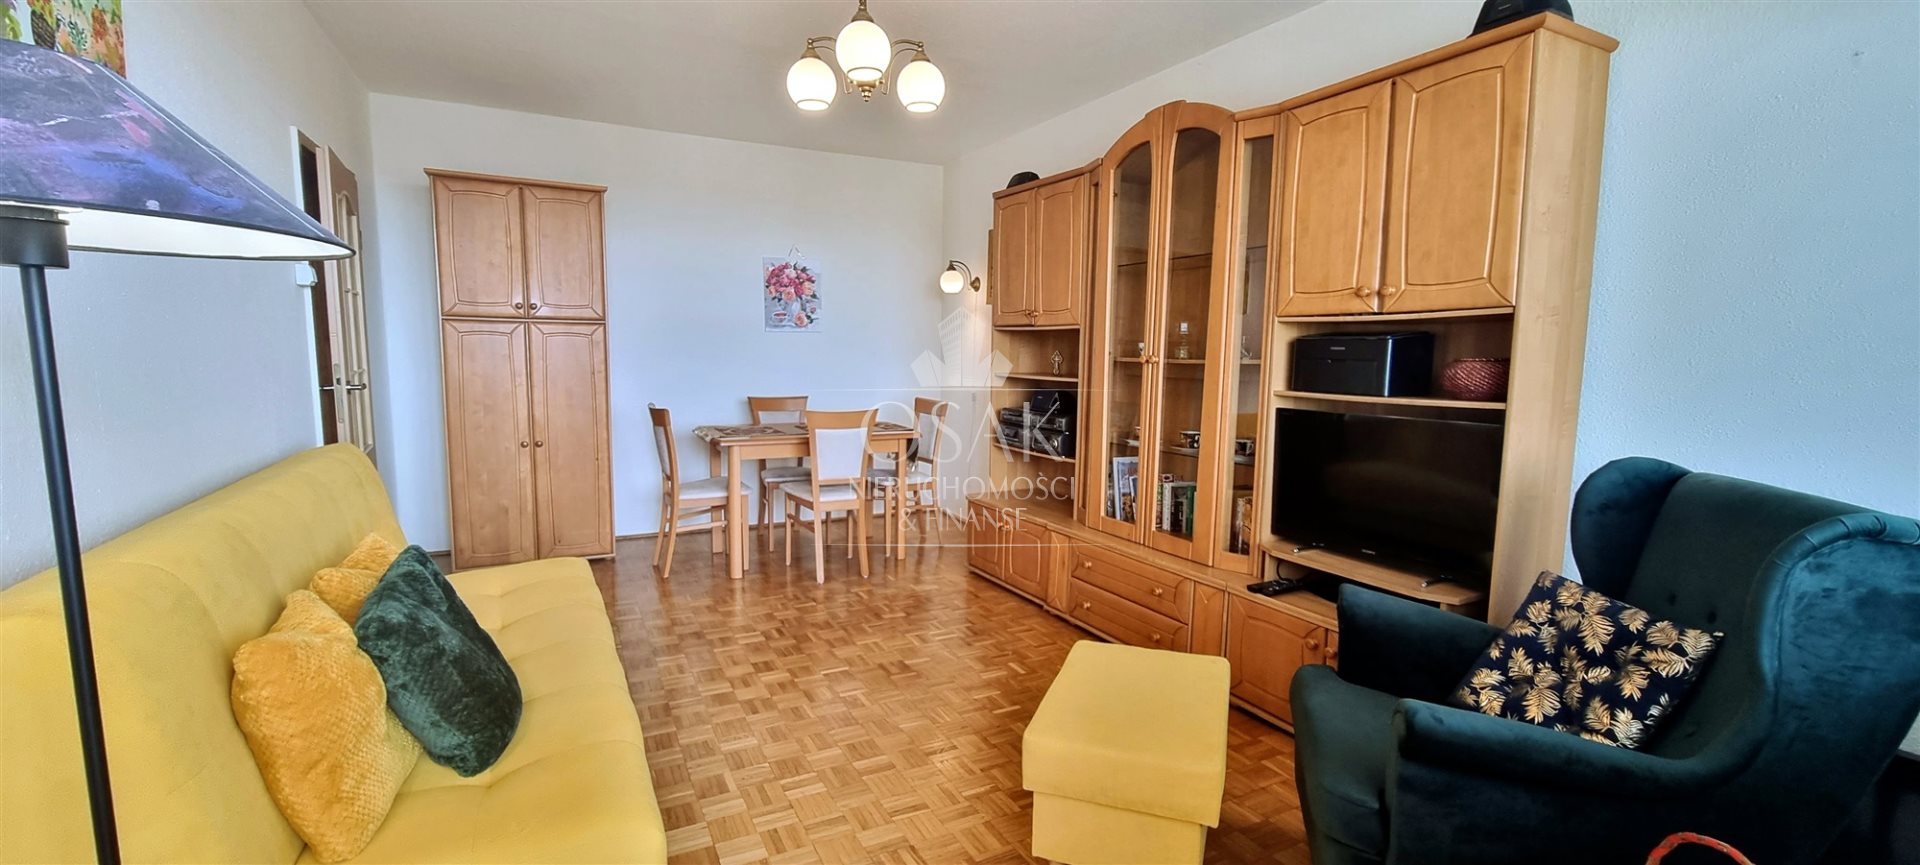 Mieszkanie, 2 pok., 47 m2, Szczecin Książąt Pomorskich (3)